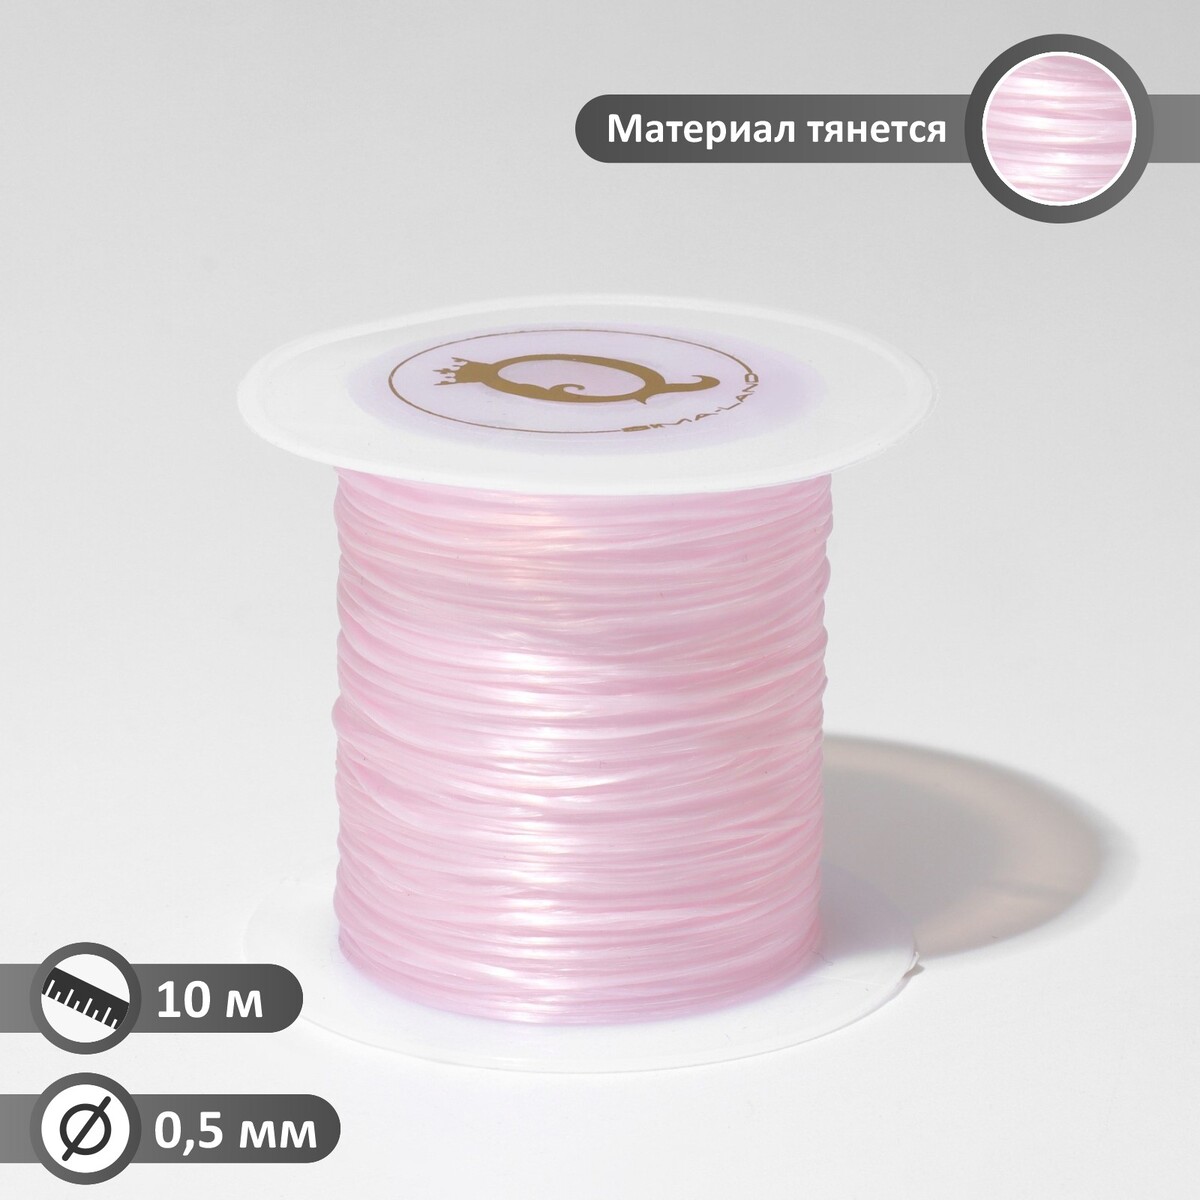 Нить силиконовая (резинка) d=0,5 мм, l=10 м (прочность 2250 денье), цвет светло-розовый нить силиконовая резинка d 0 5мм l 400м прочность 2500 денье